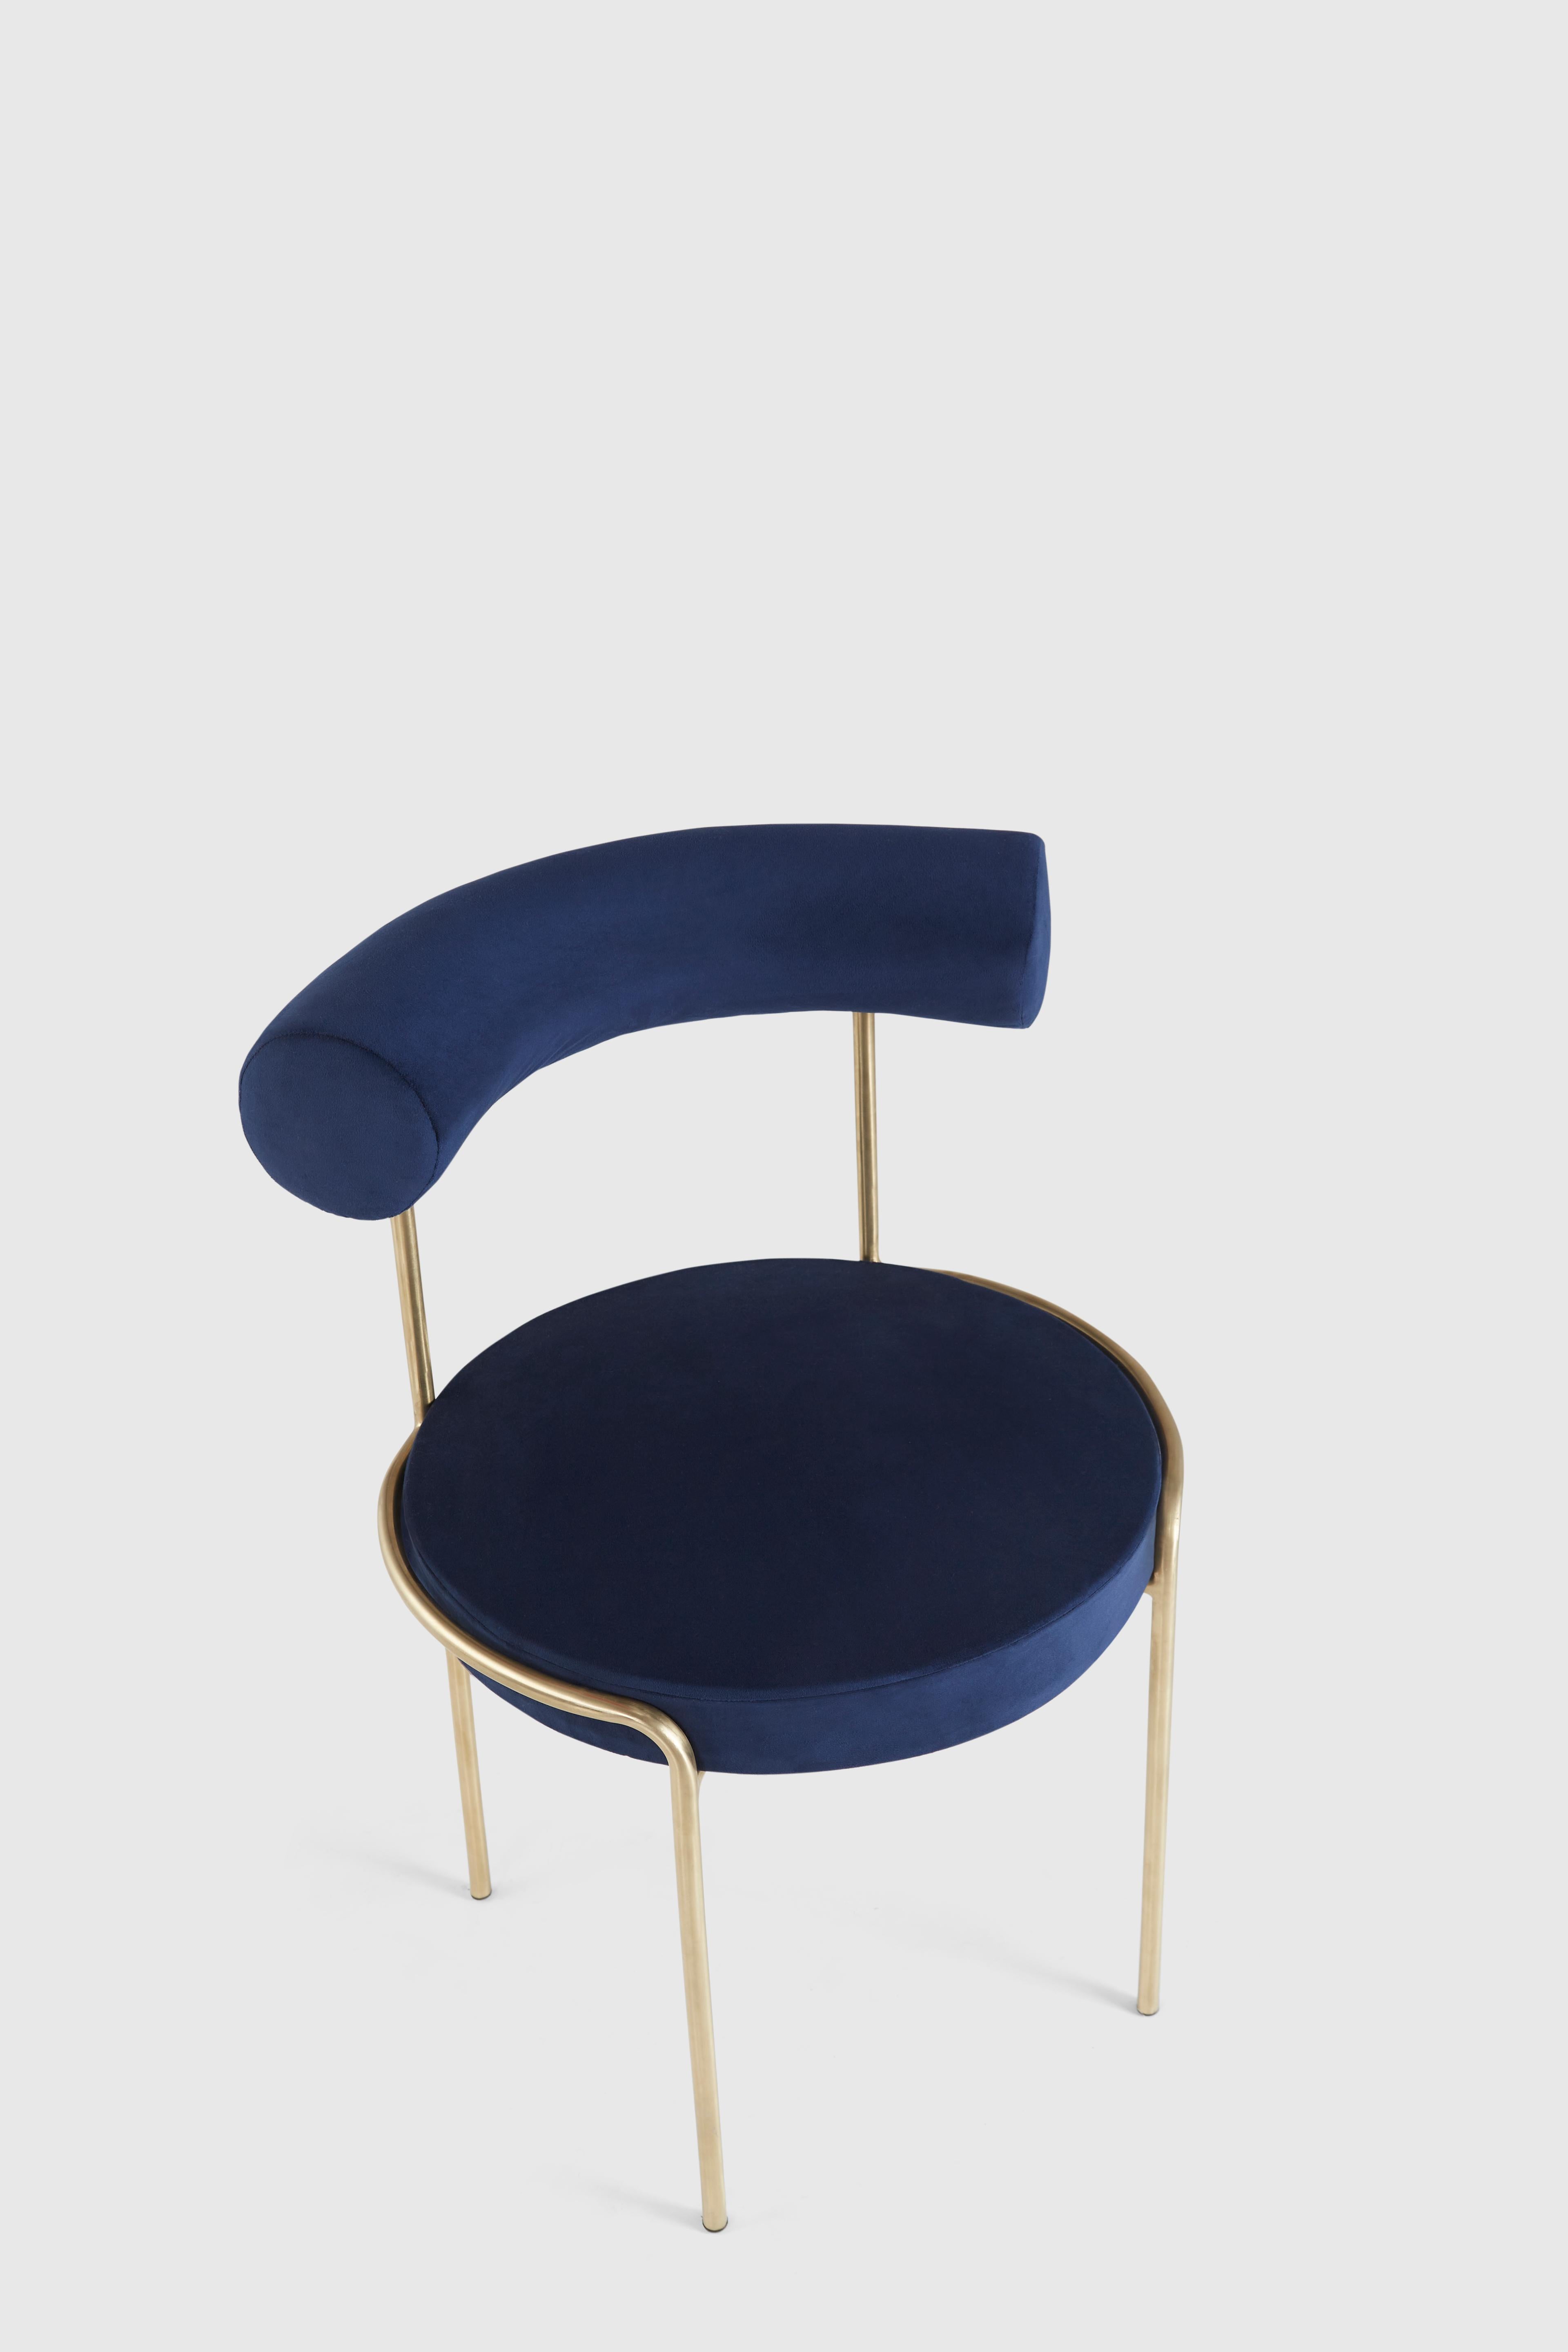 hatsu furniture